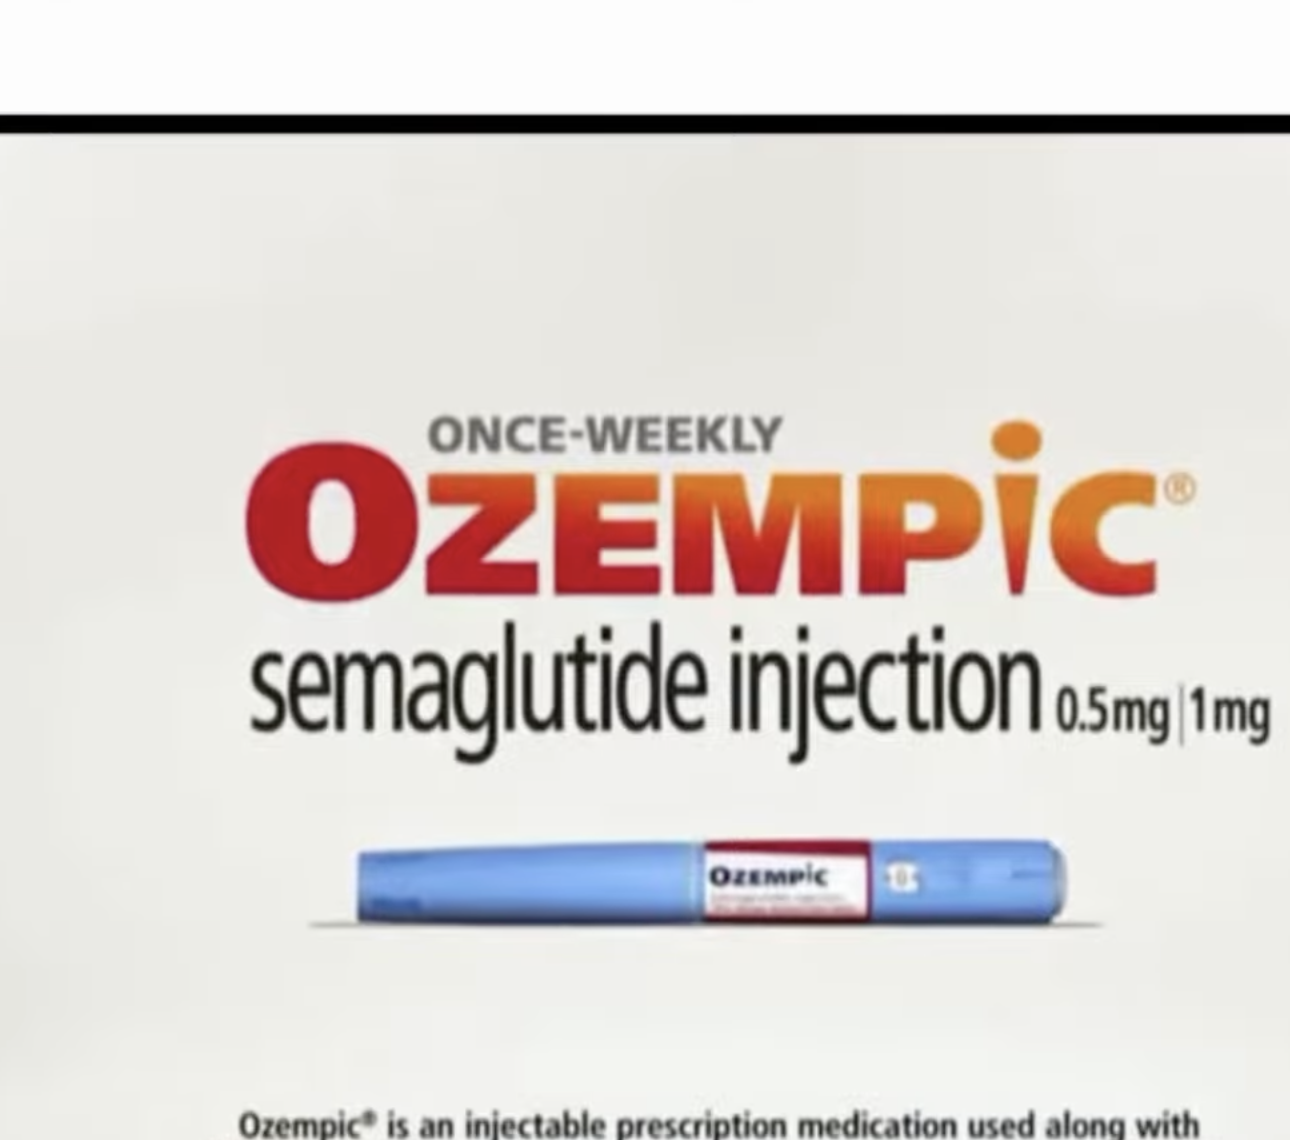 Screenshot, prescription drug ad